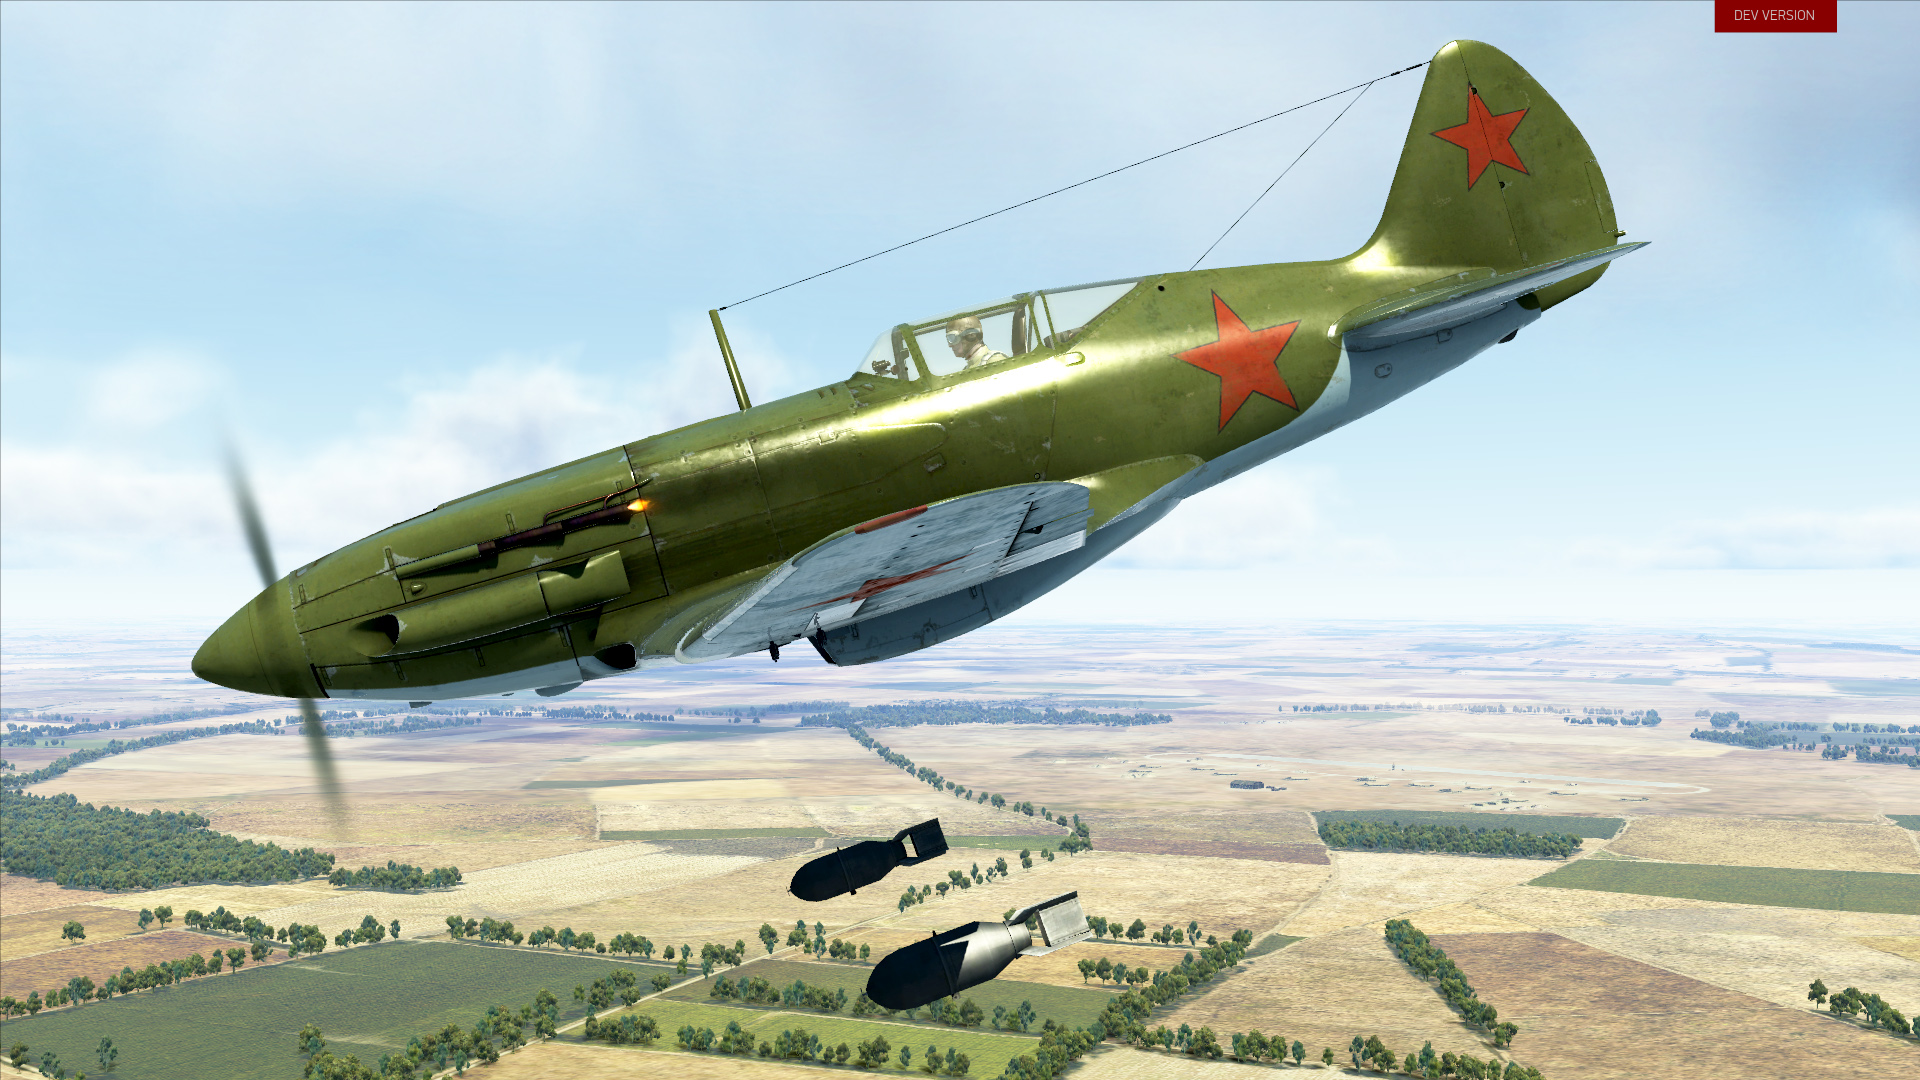 steam il-2 sturmovik battle of stalingrad